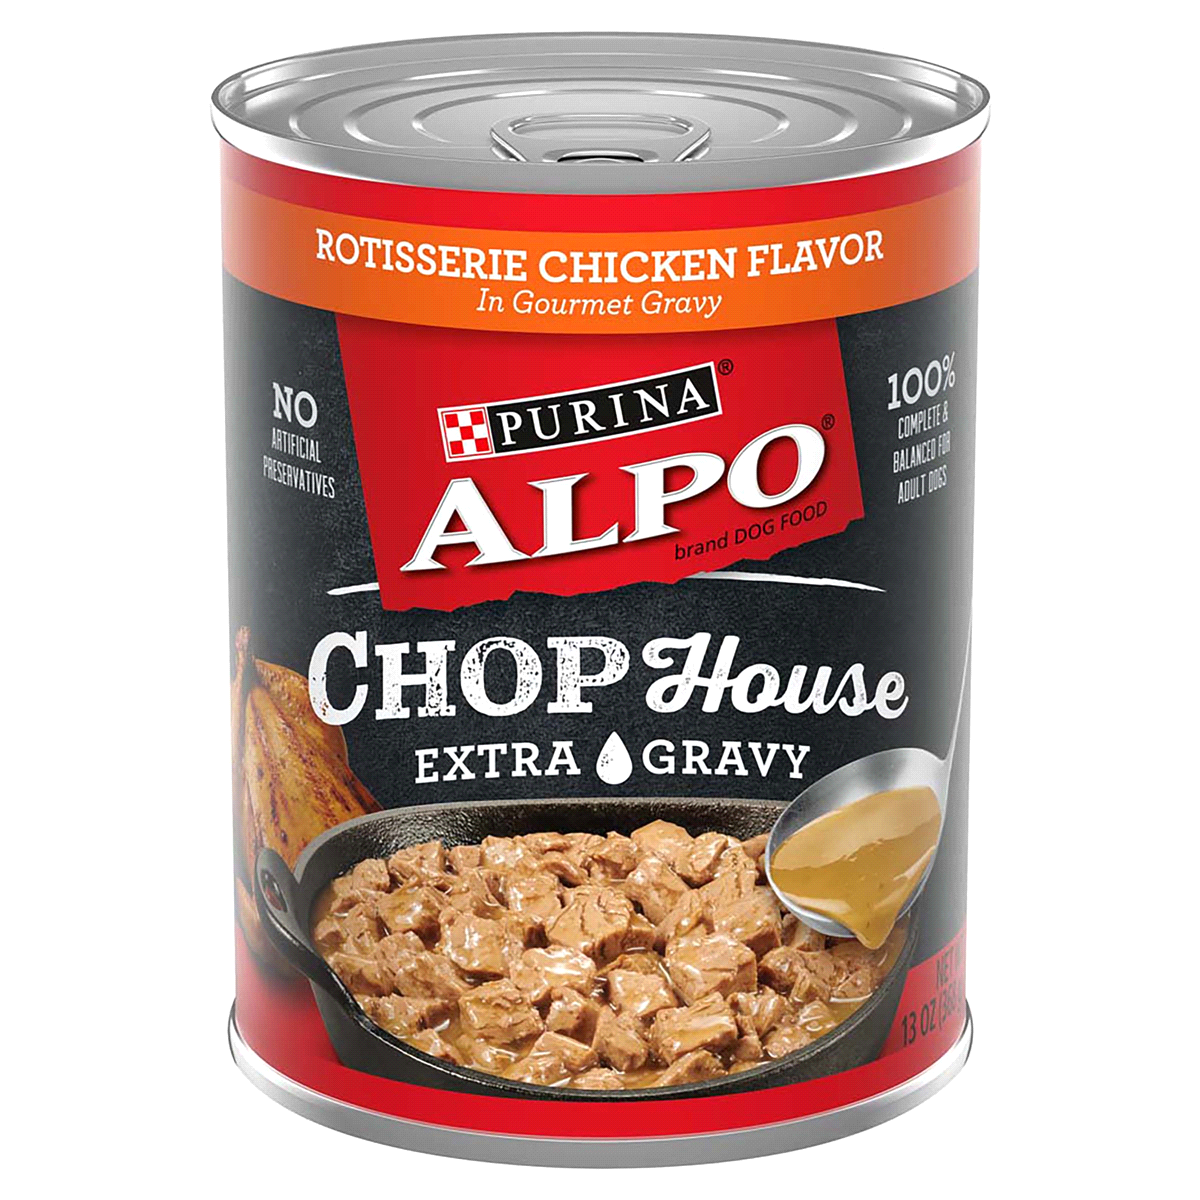 slide 1 of 1, ALPO WET DOG FOOD Alpo Chop House Rotisserie Chicken Flavor In Gourmet Gravy, 13 oz